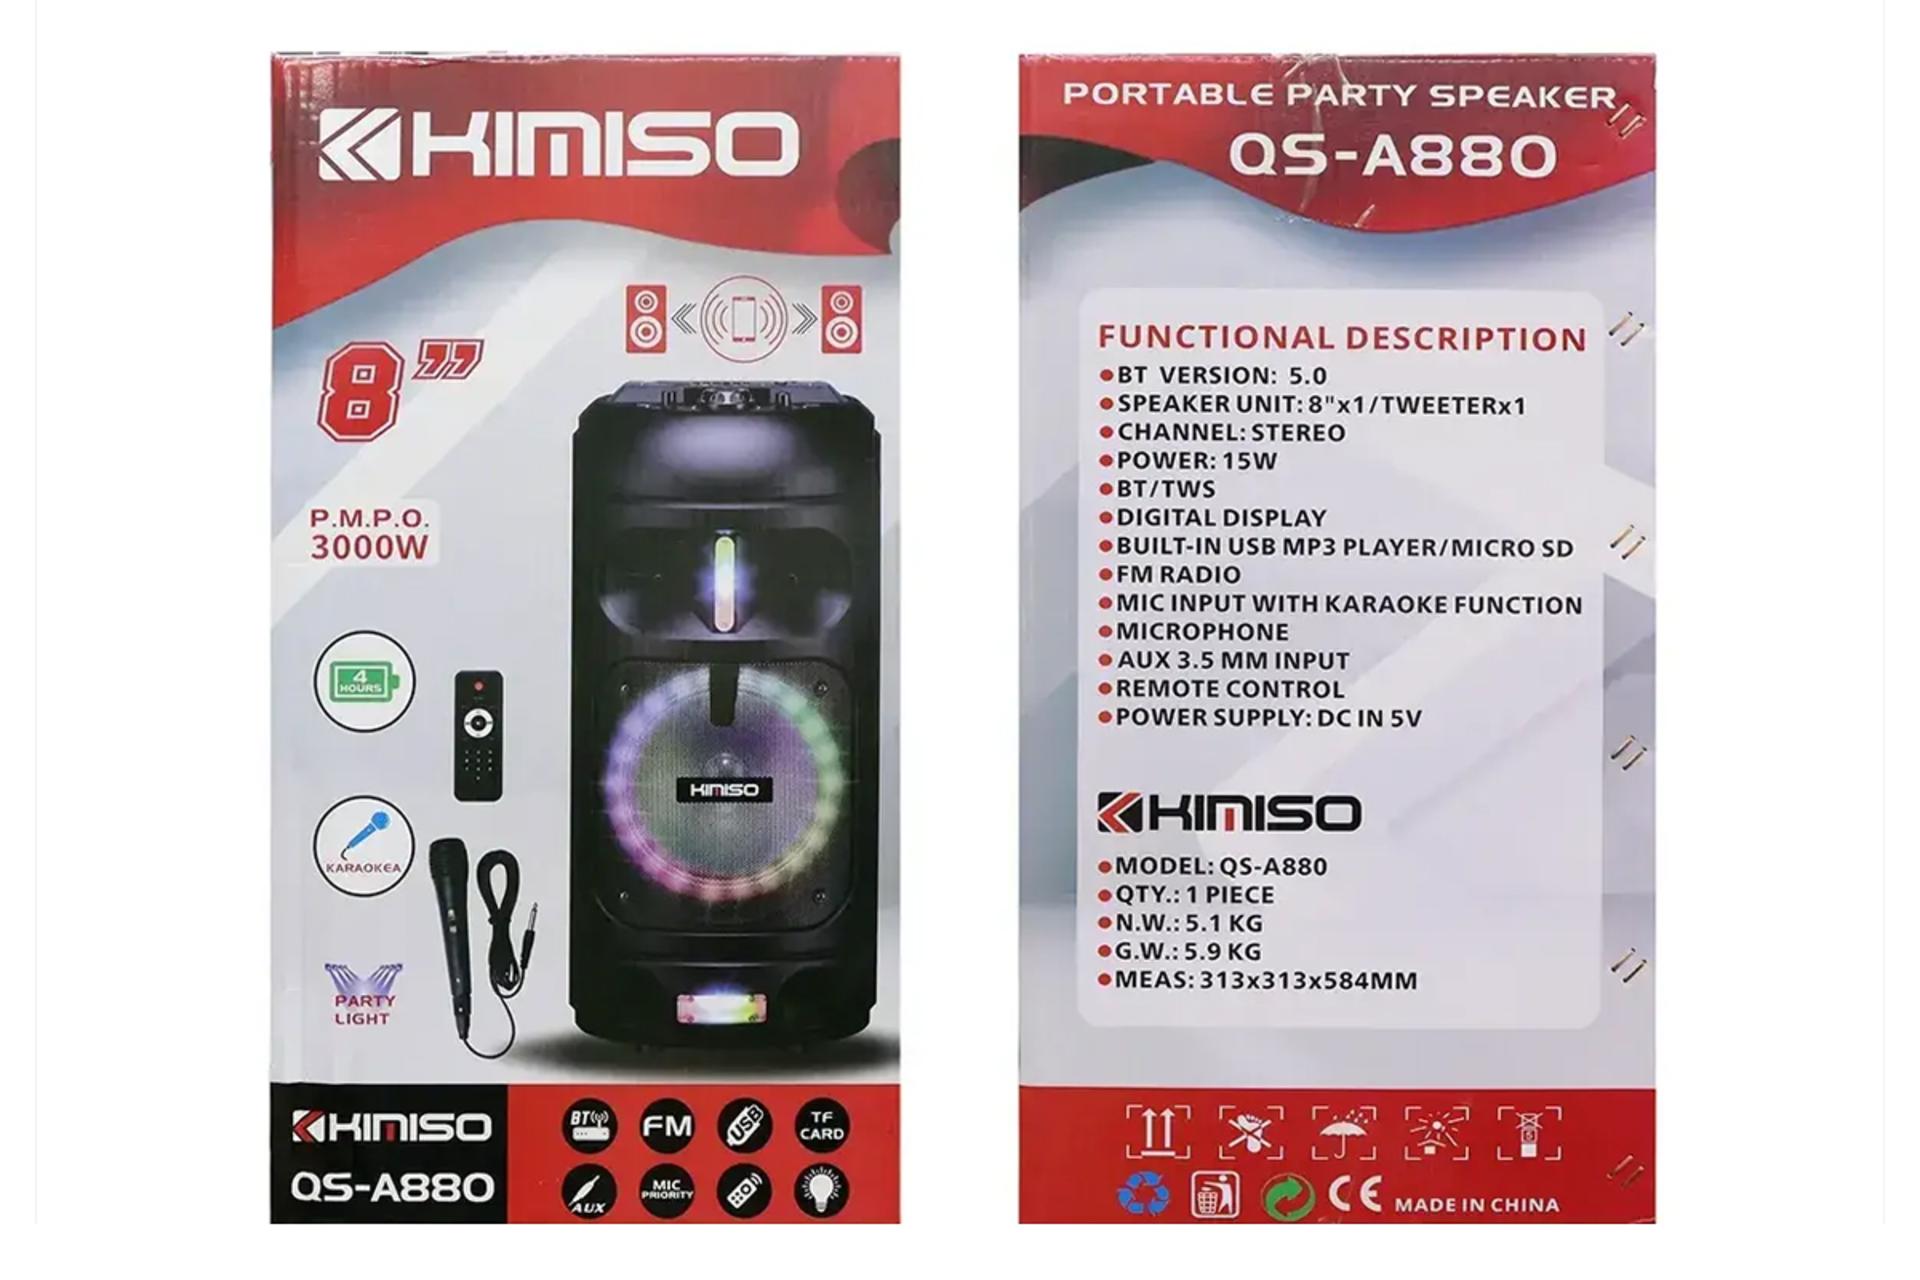 جعبه اسپیکر کیمیسو Kimiso QS-A880